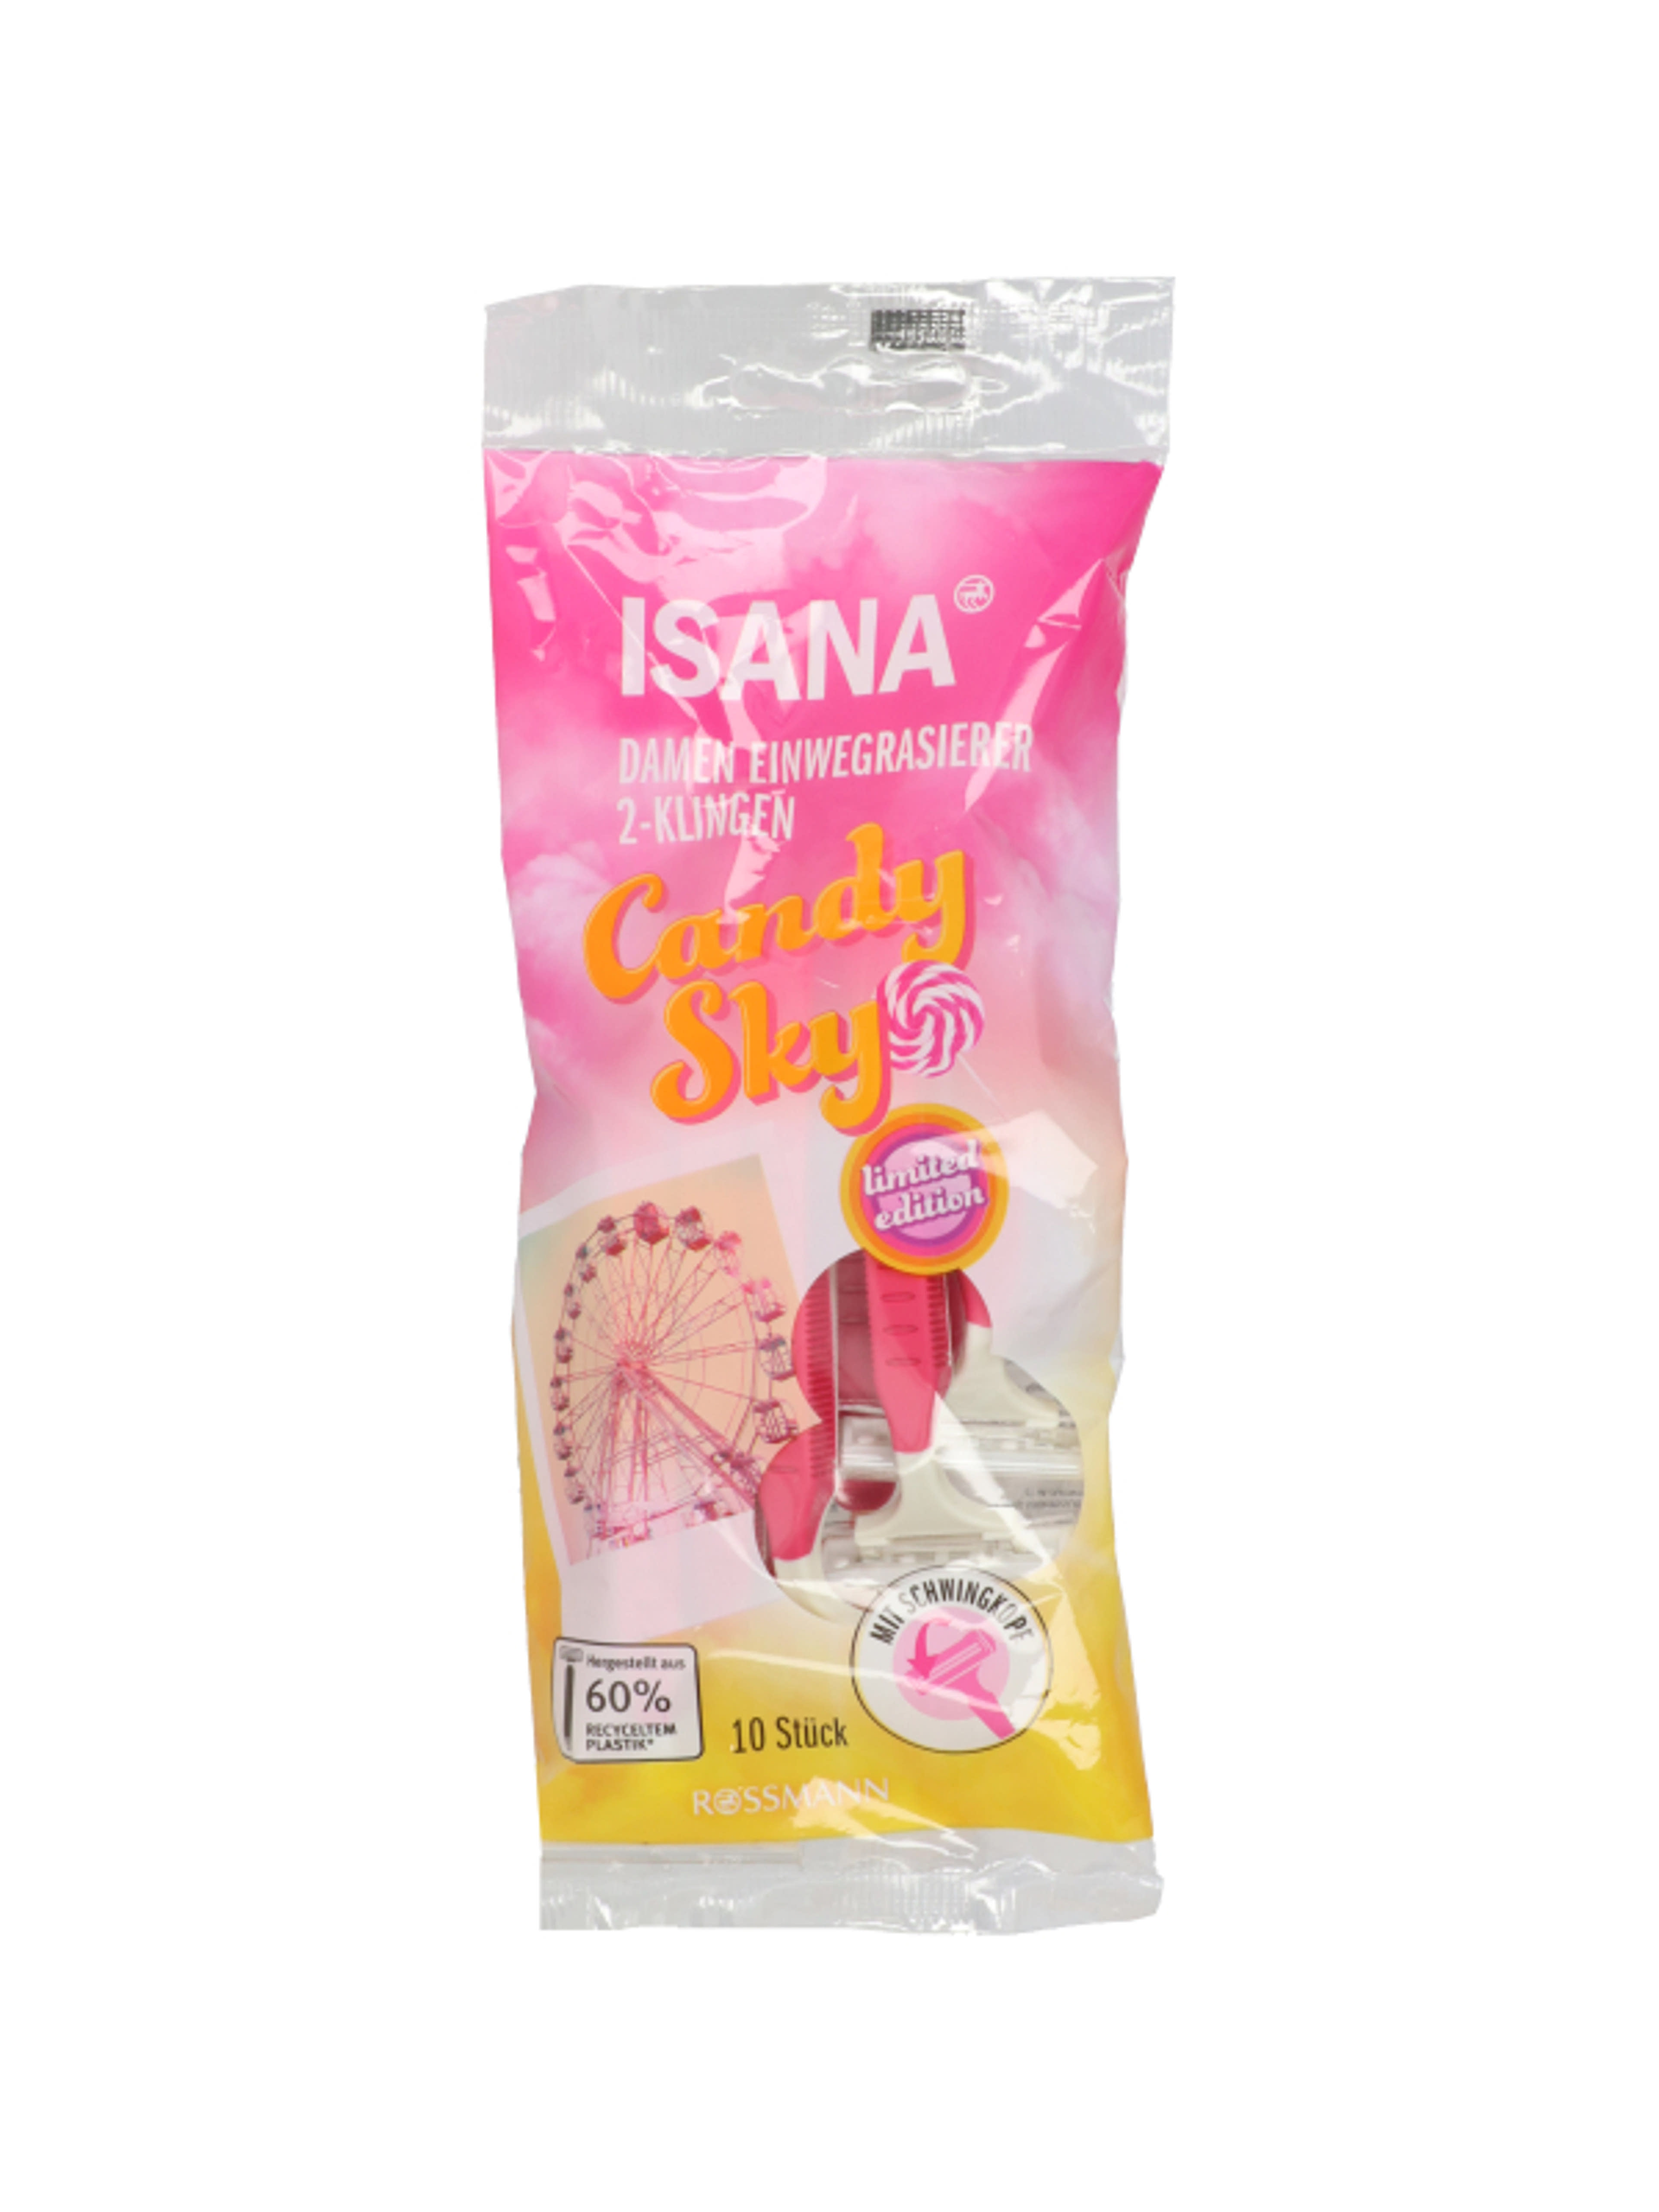 Isana Candy Sky eldobható női borotva, 2 pengés - 10 db